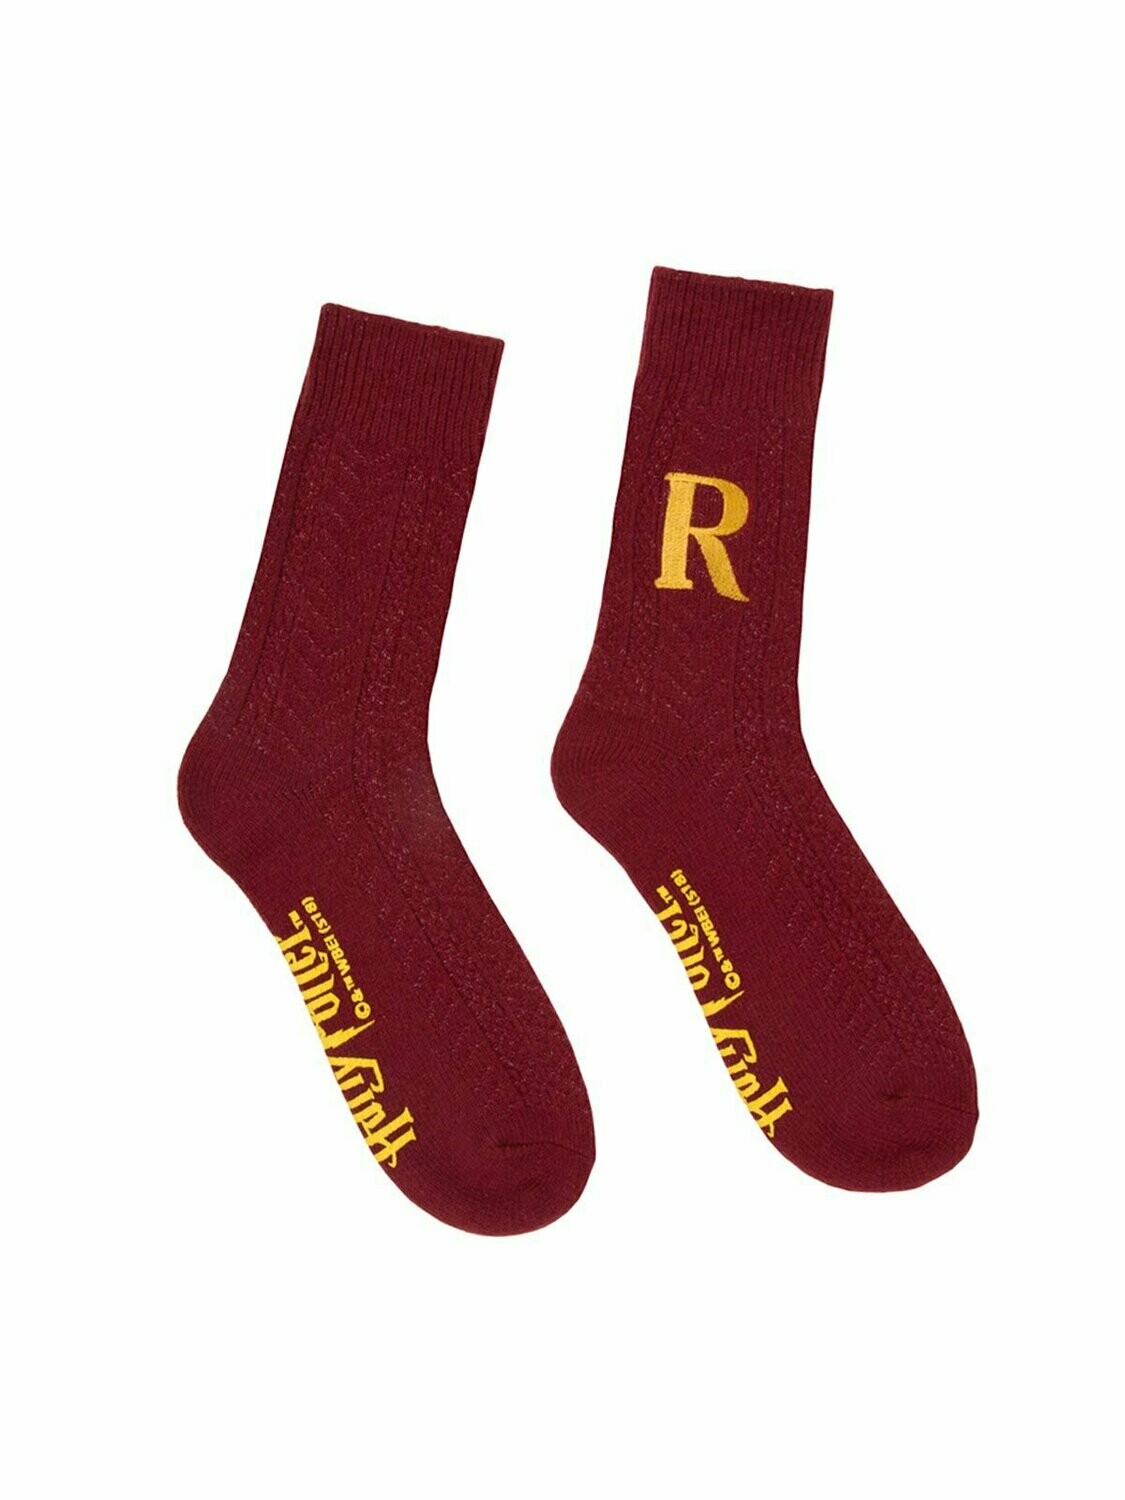 Ron Weasley Sweater socks